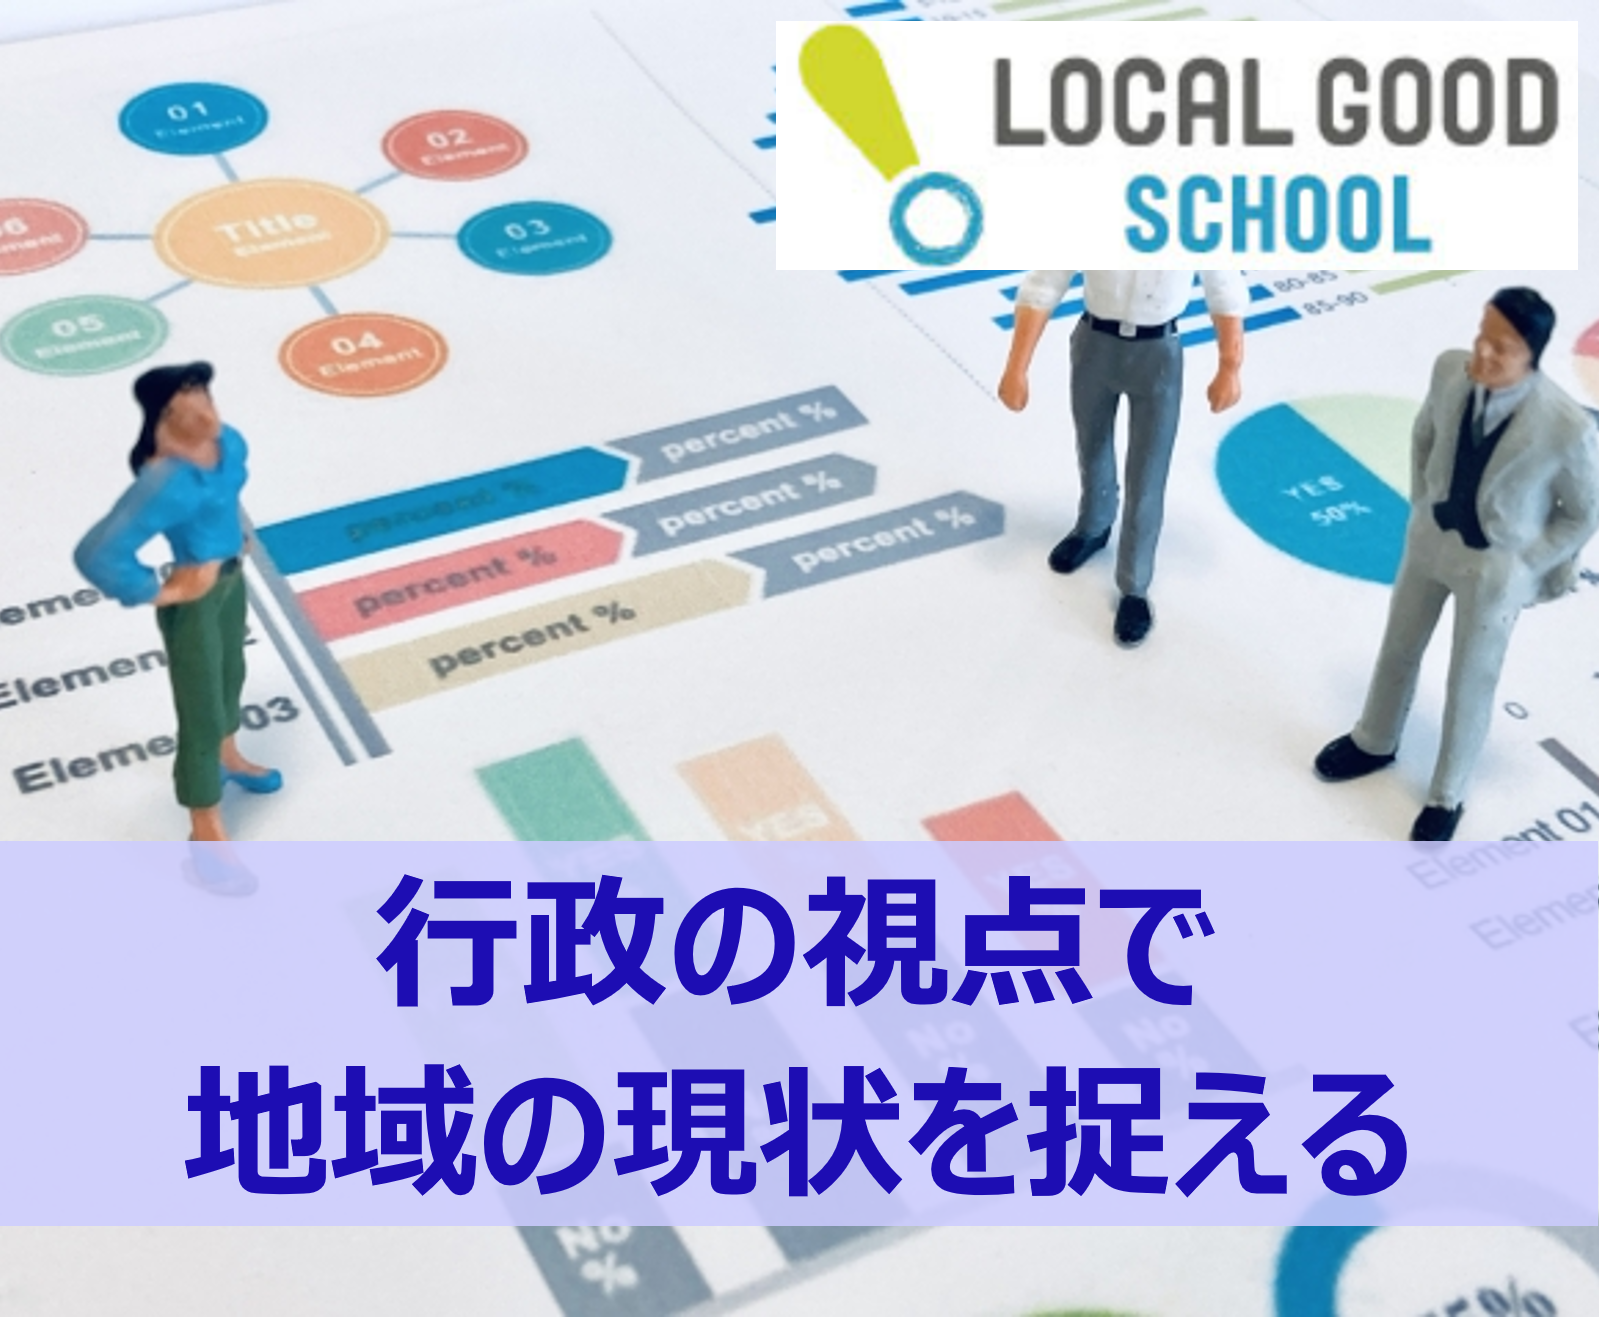 横浜におけるヘルスケアイノベーションの先進事例 - LOCAL GOOD SCHOOL